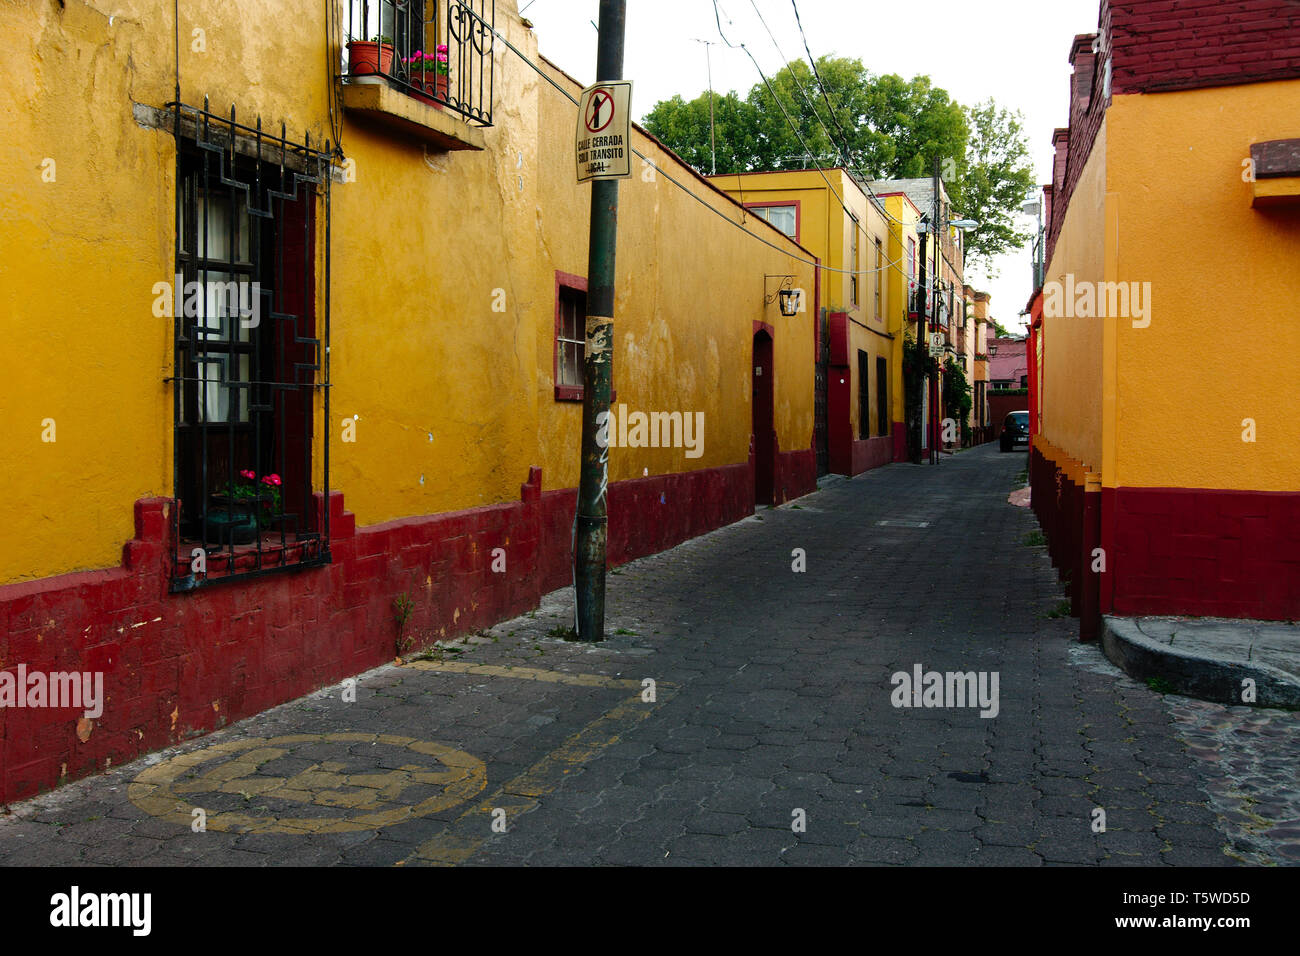 Mexiko City, Mexiko - 2019: eine schmale Straße mit Kopfsteinpflaster in der coyoacan Bezirk, mit Häusern, die in der typischen Architektur dieser Gegend. Stockfoto